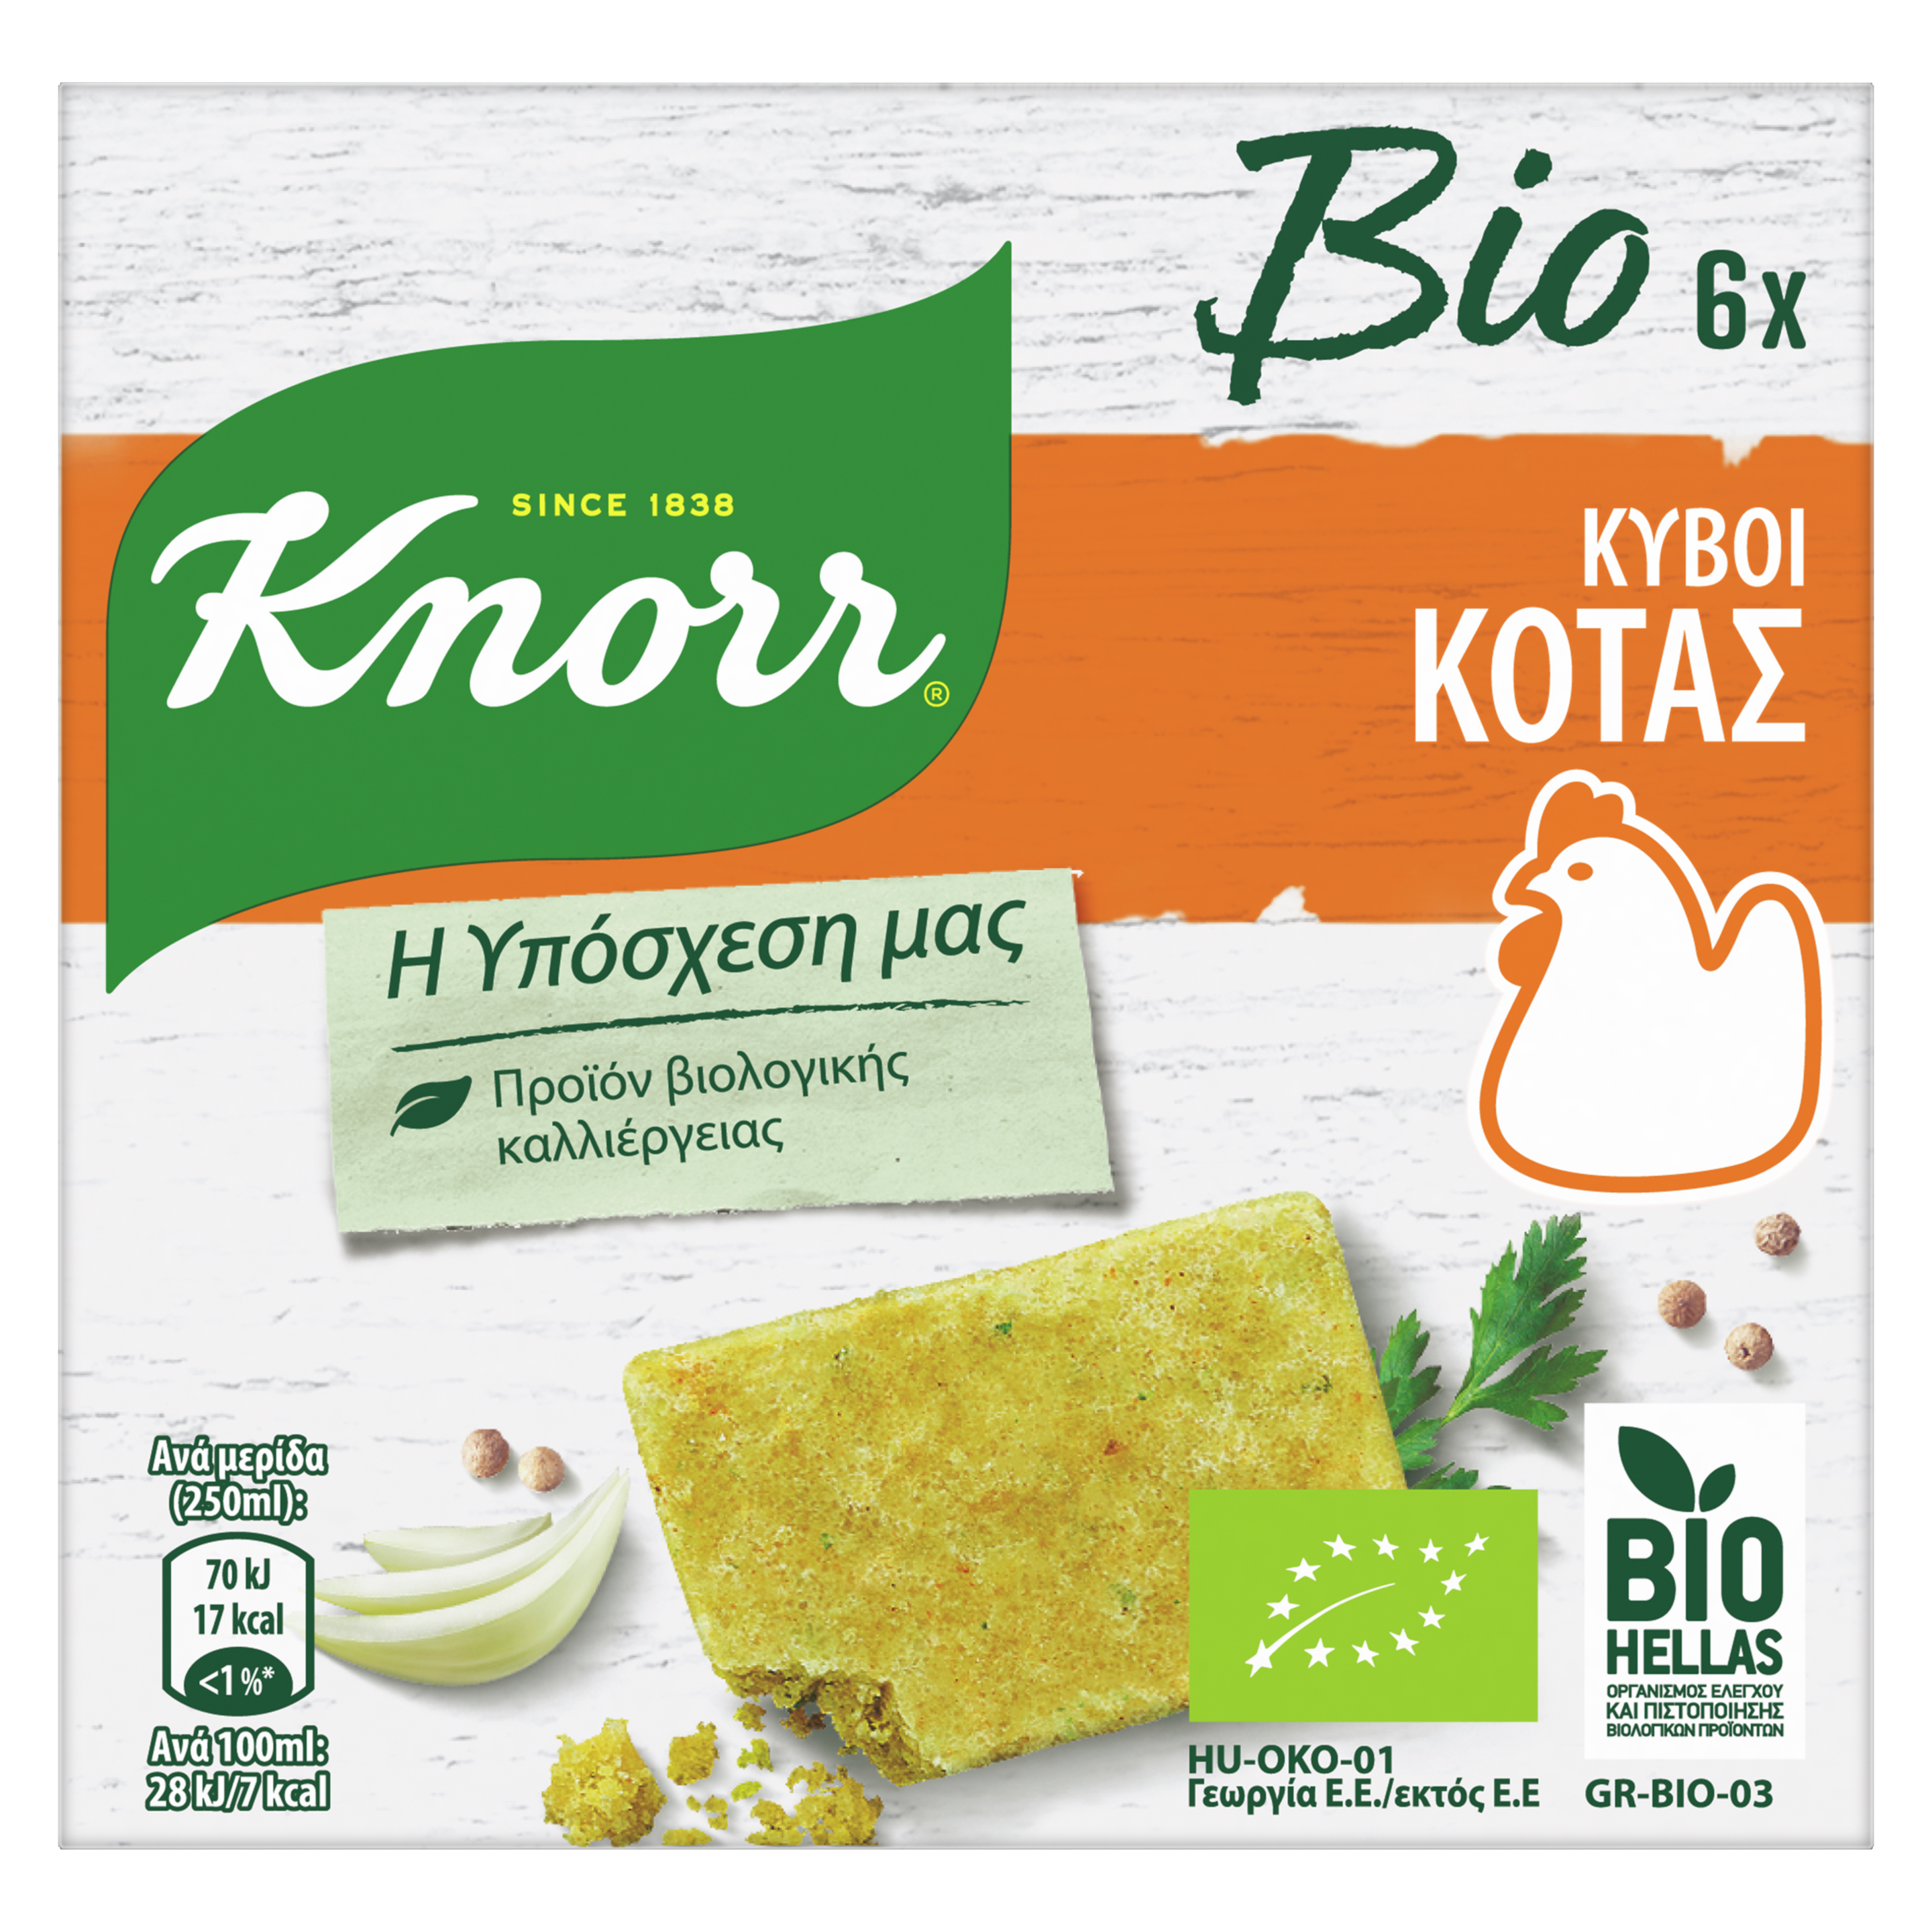 Knorr Βιολογικός Κύβος Κότας